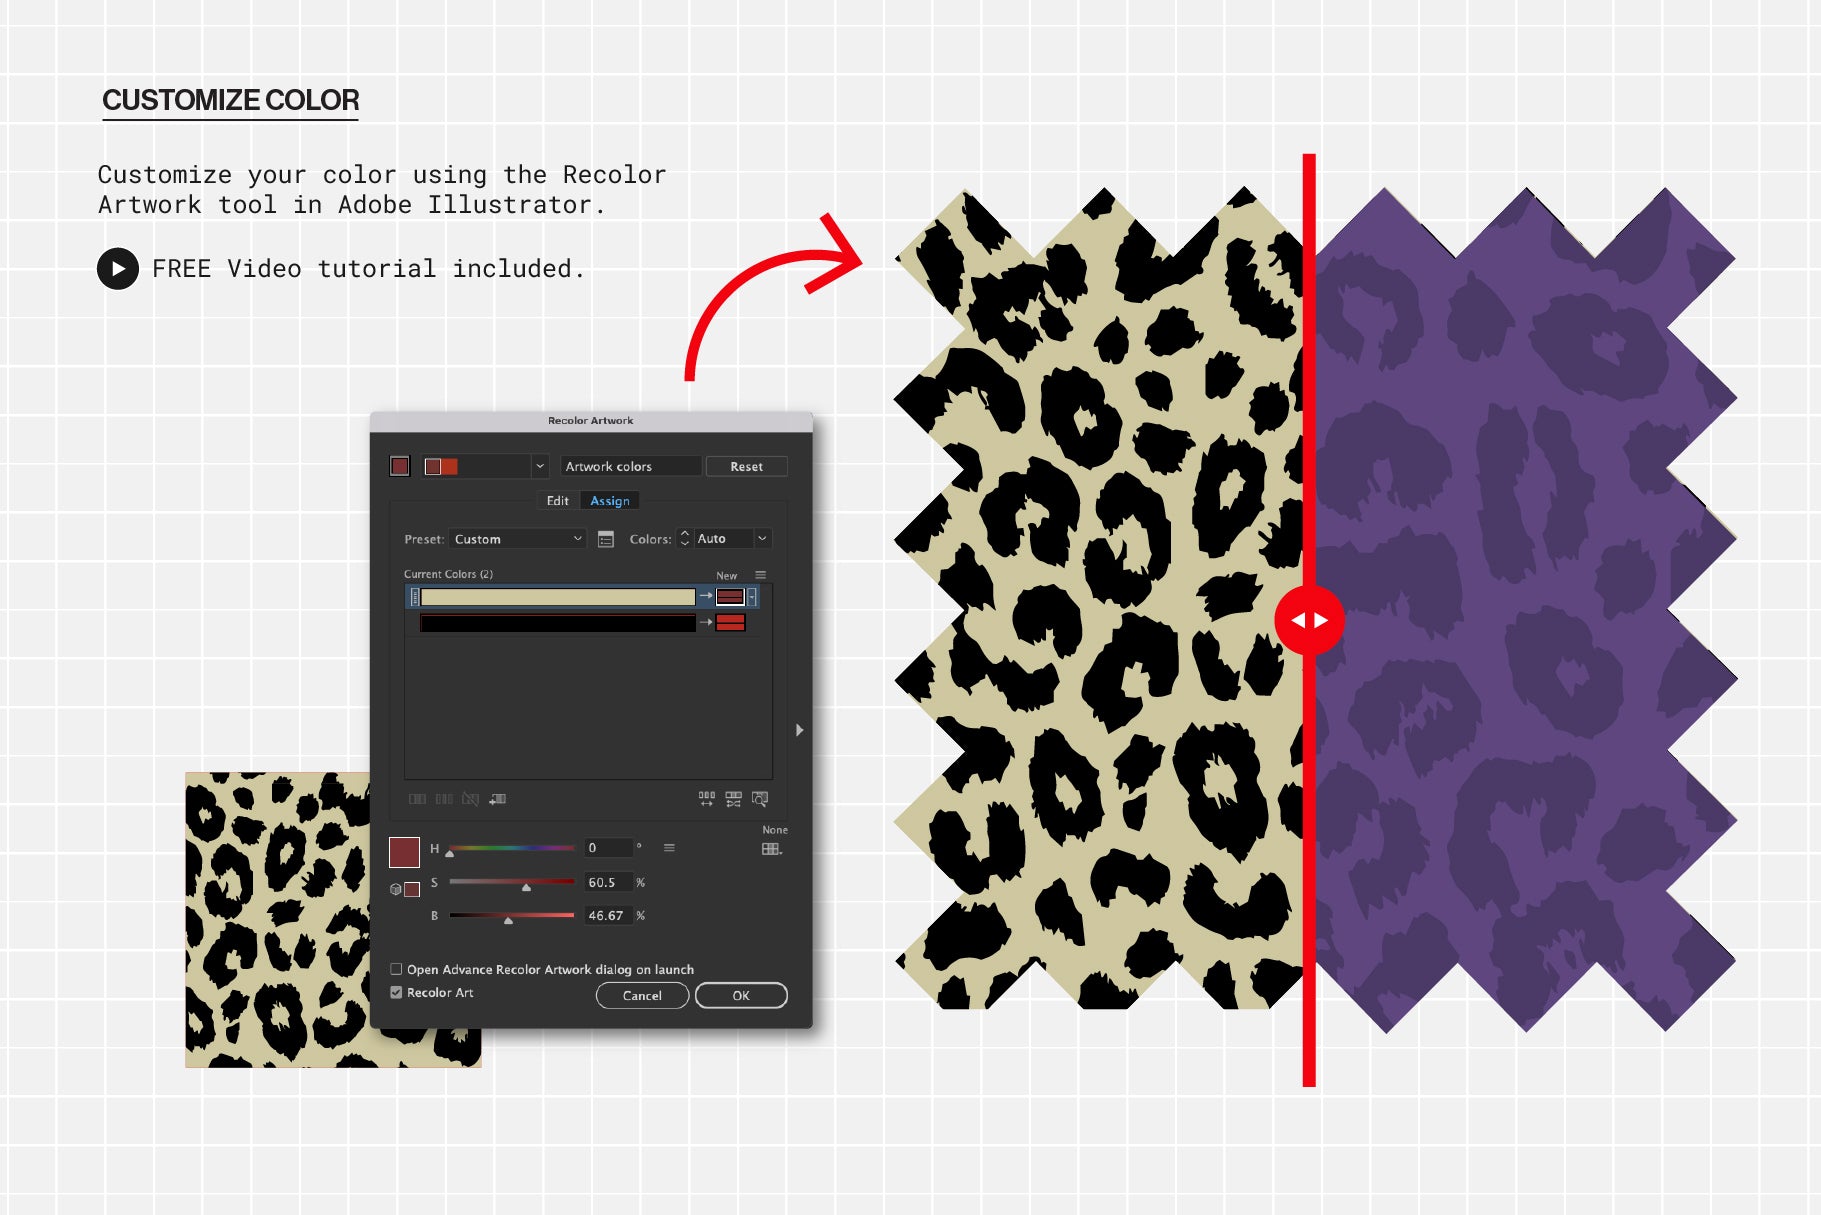 Leopard Pattern 2